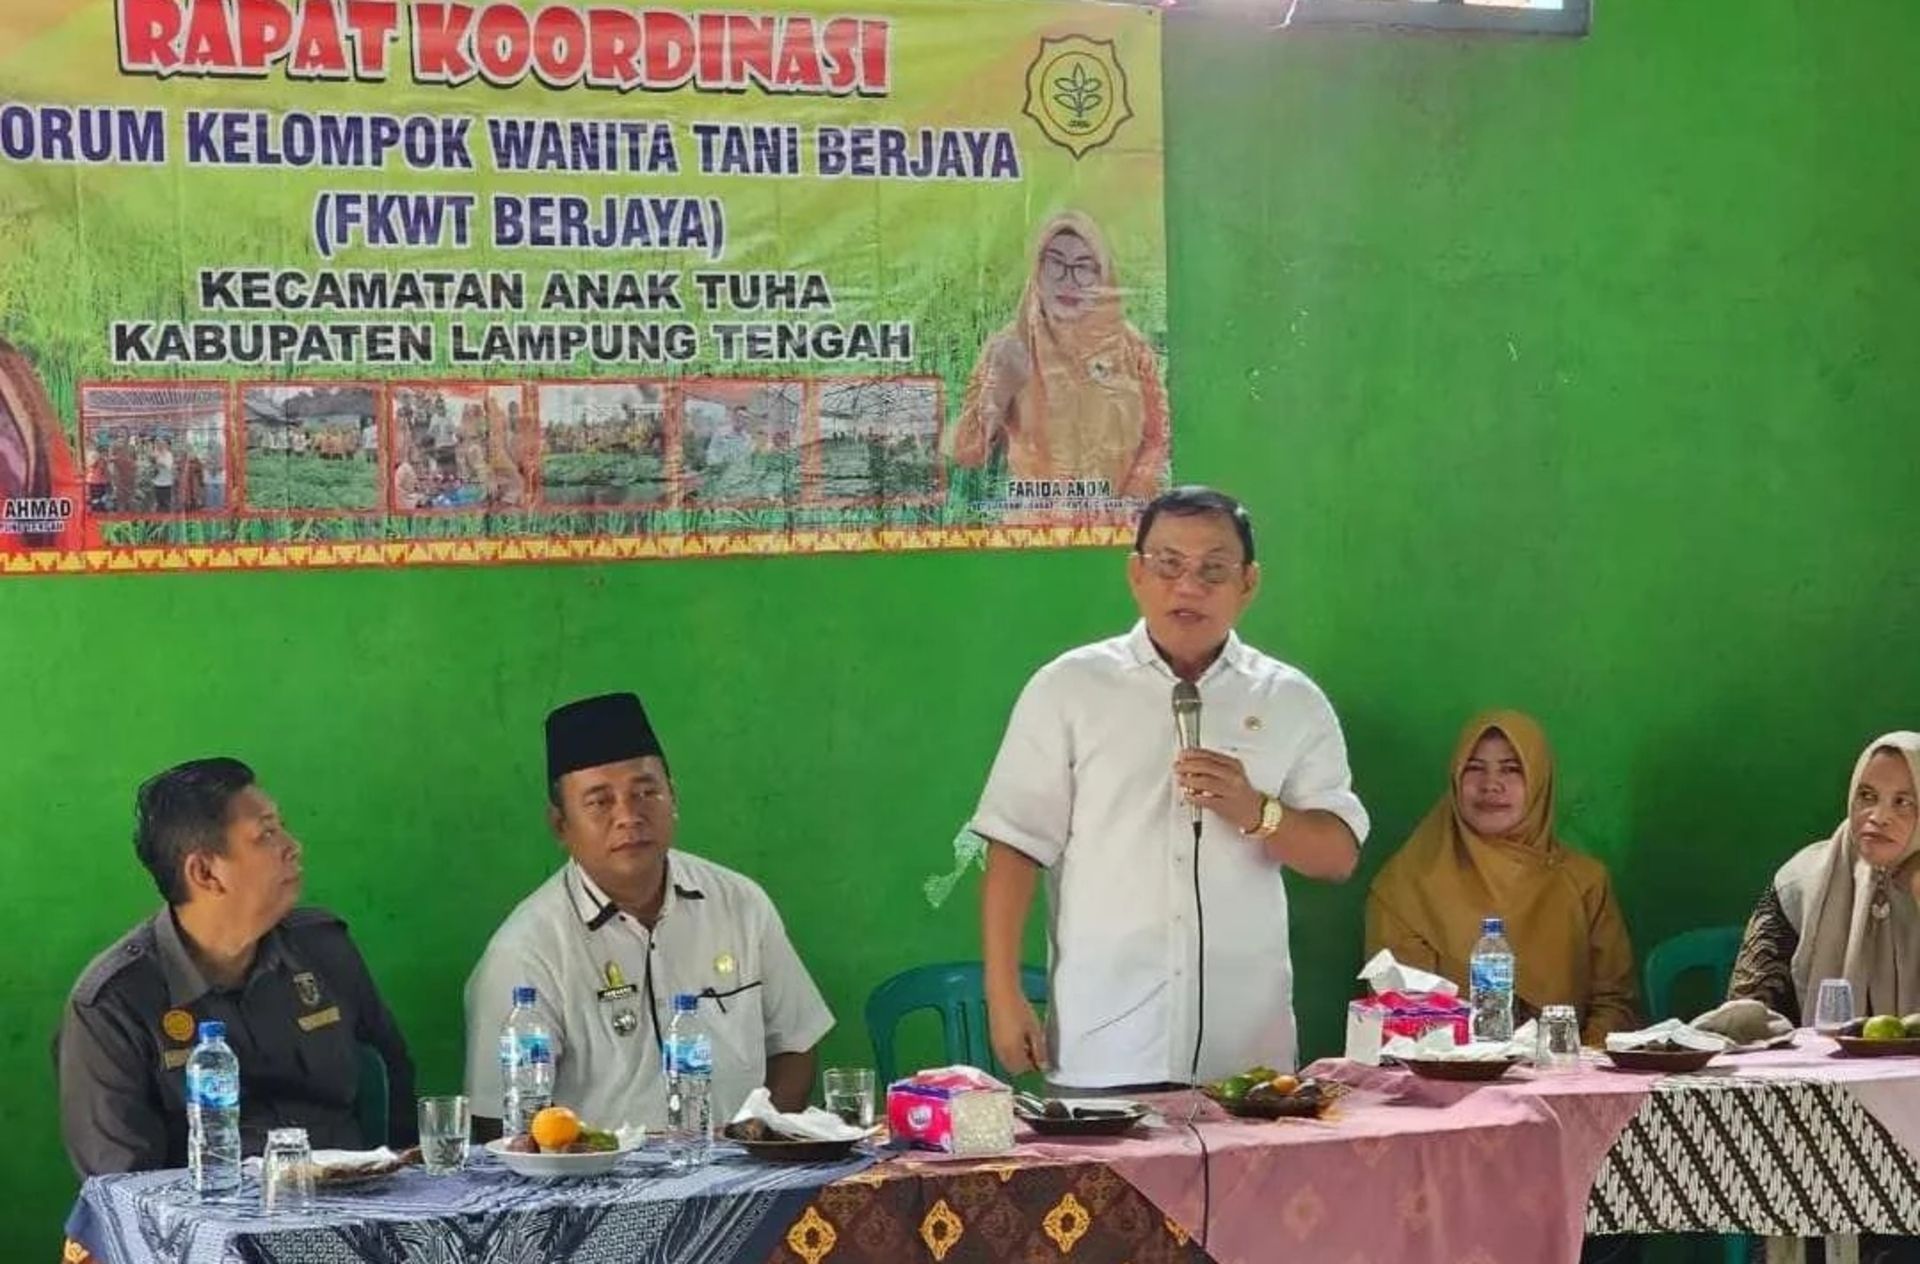 Bacagub Lampung Hanan A Rozak hadiri Rakor FKWT di Lampung Tengah